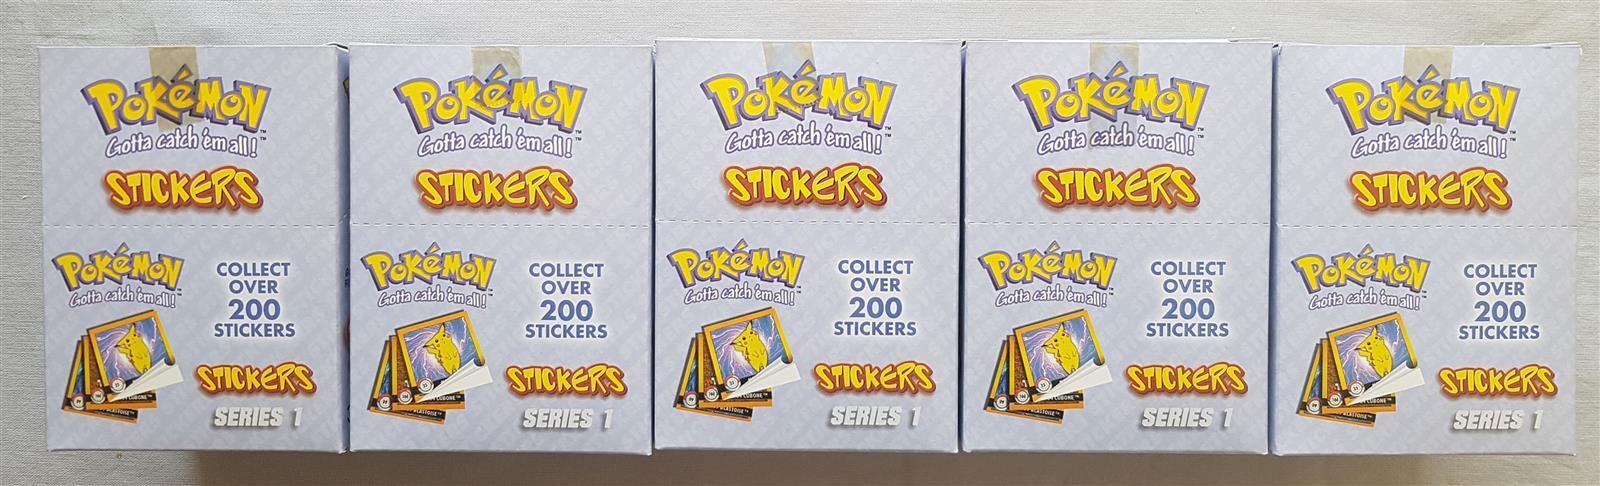 5x Pokemon Artbox Sticker Box Series 1 